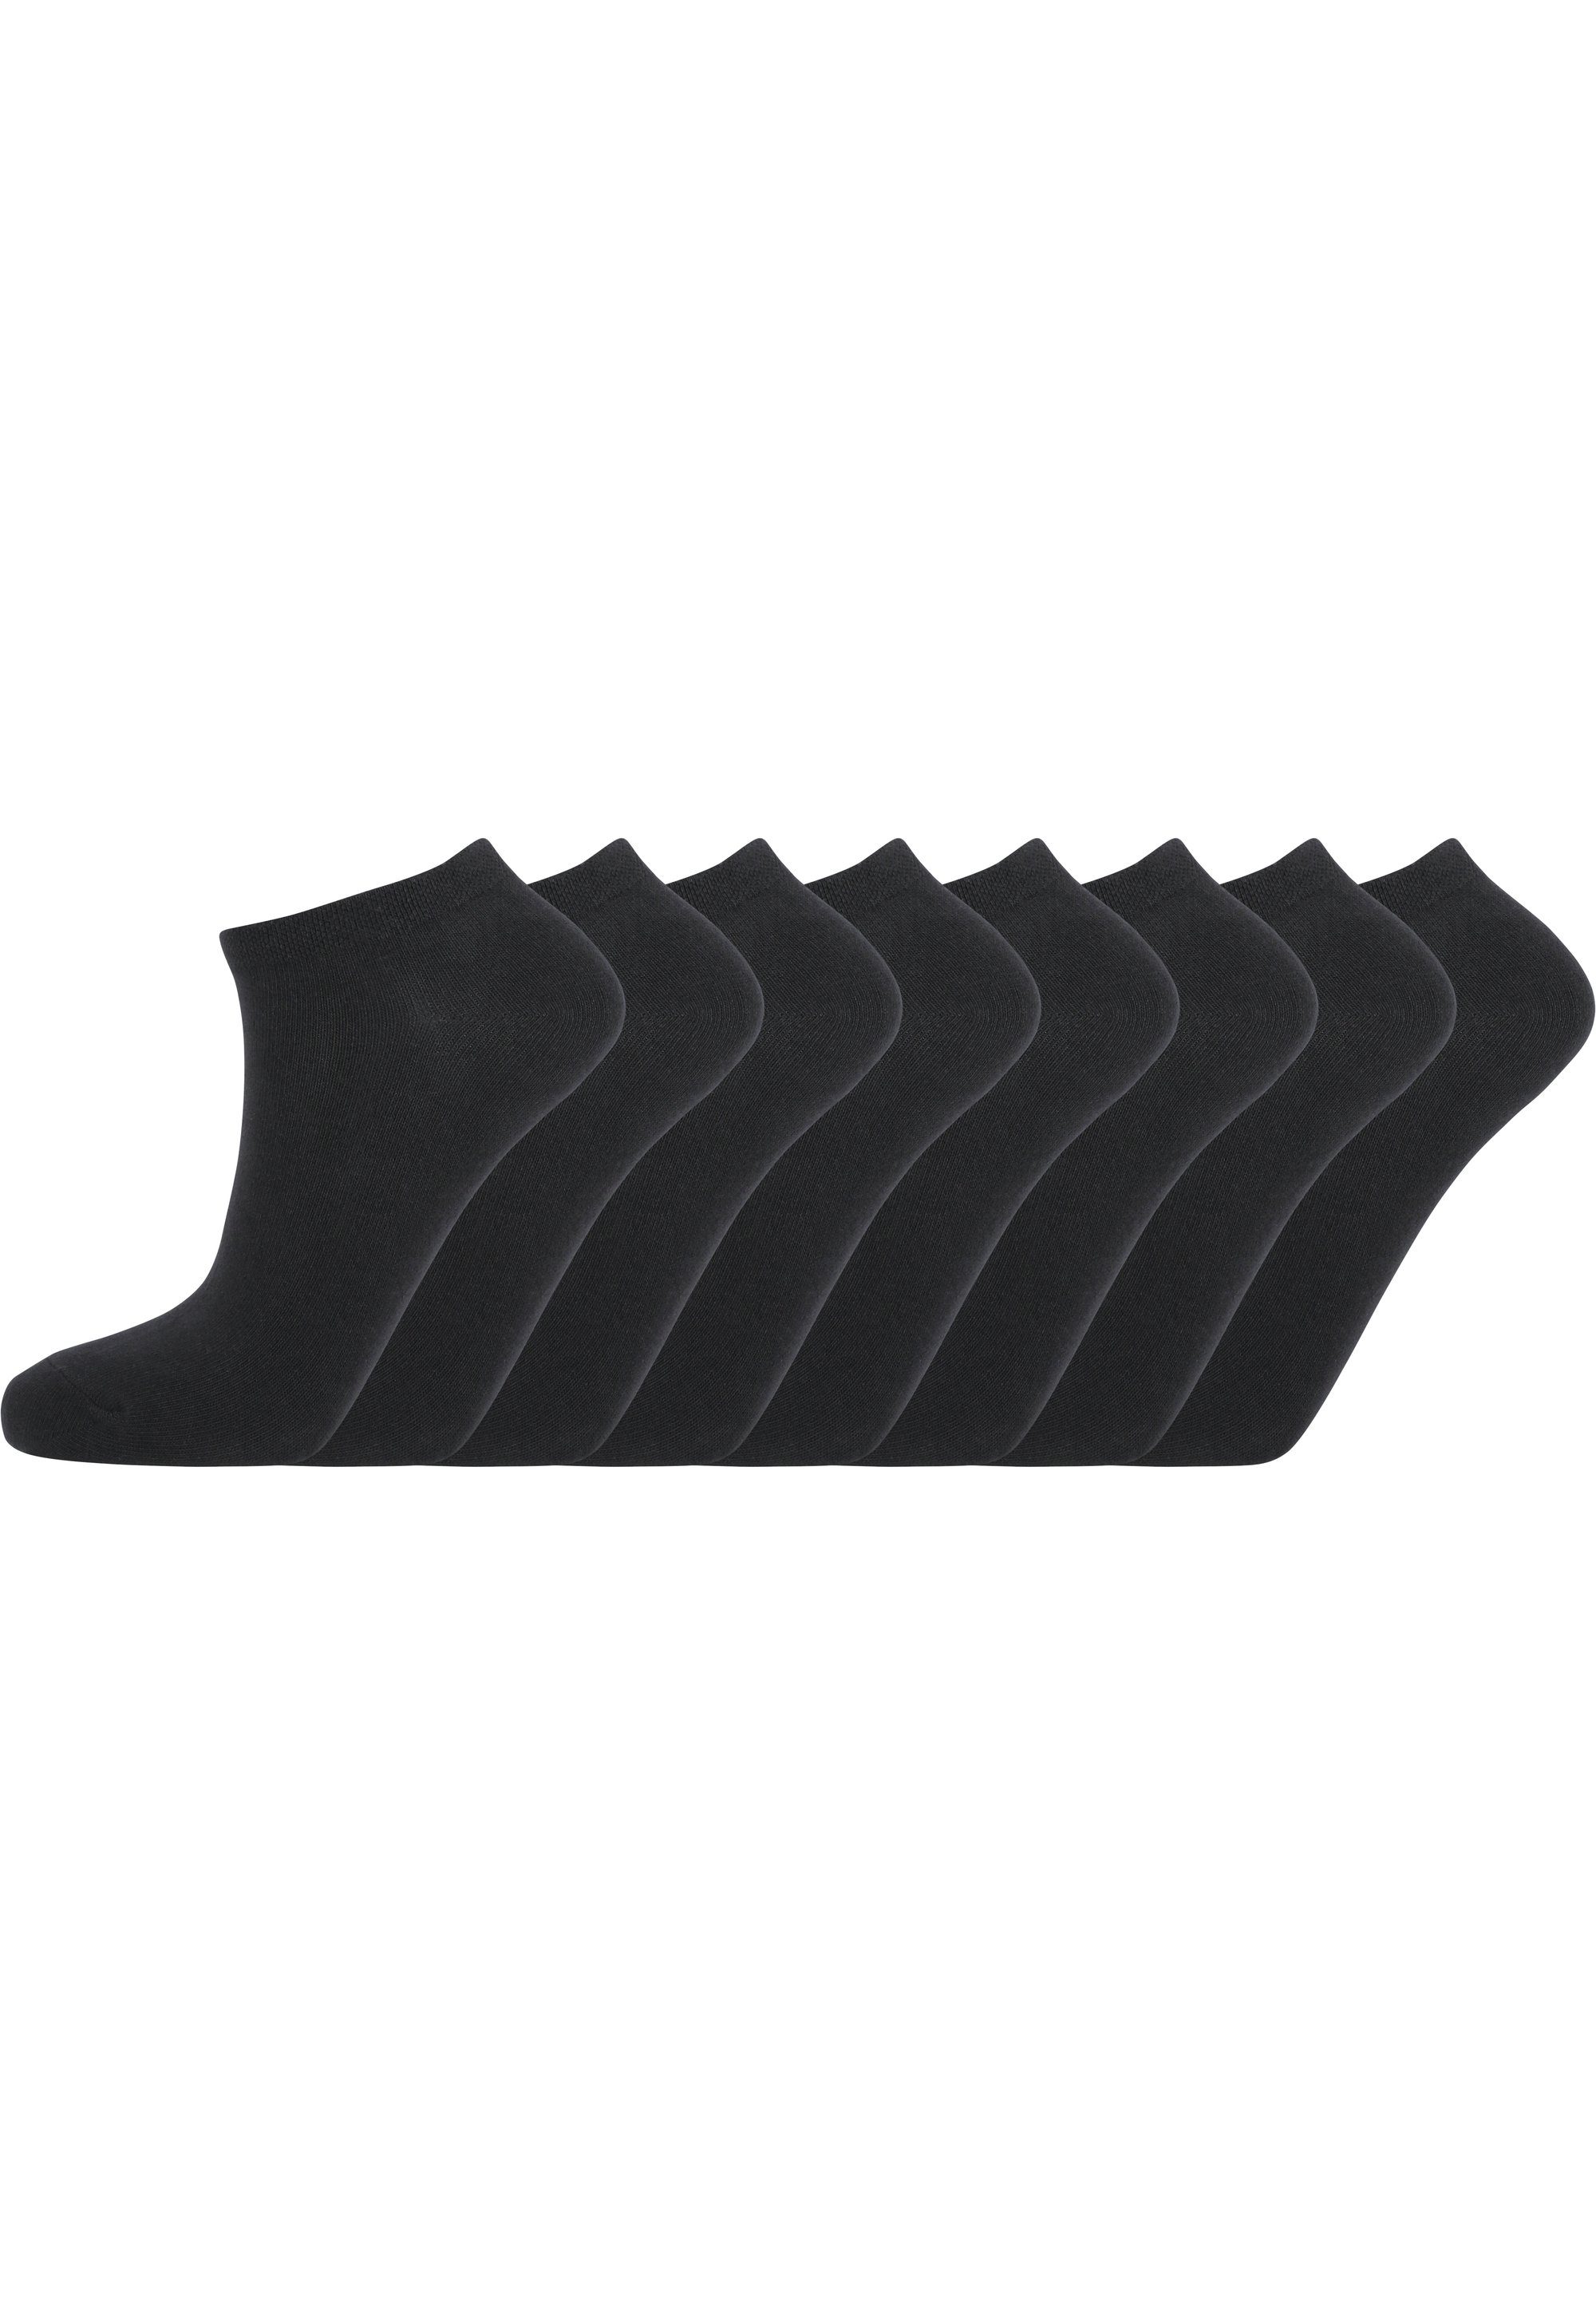 ENDURANCE Socken Mallorca (8-Paar) in atmungsaktiver Qualität schwarz